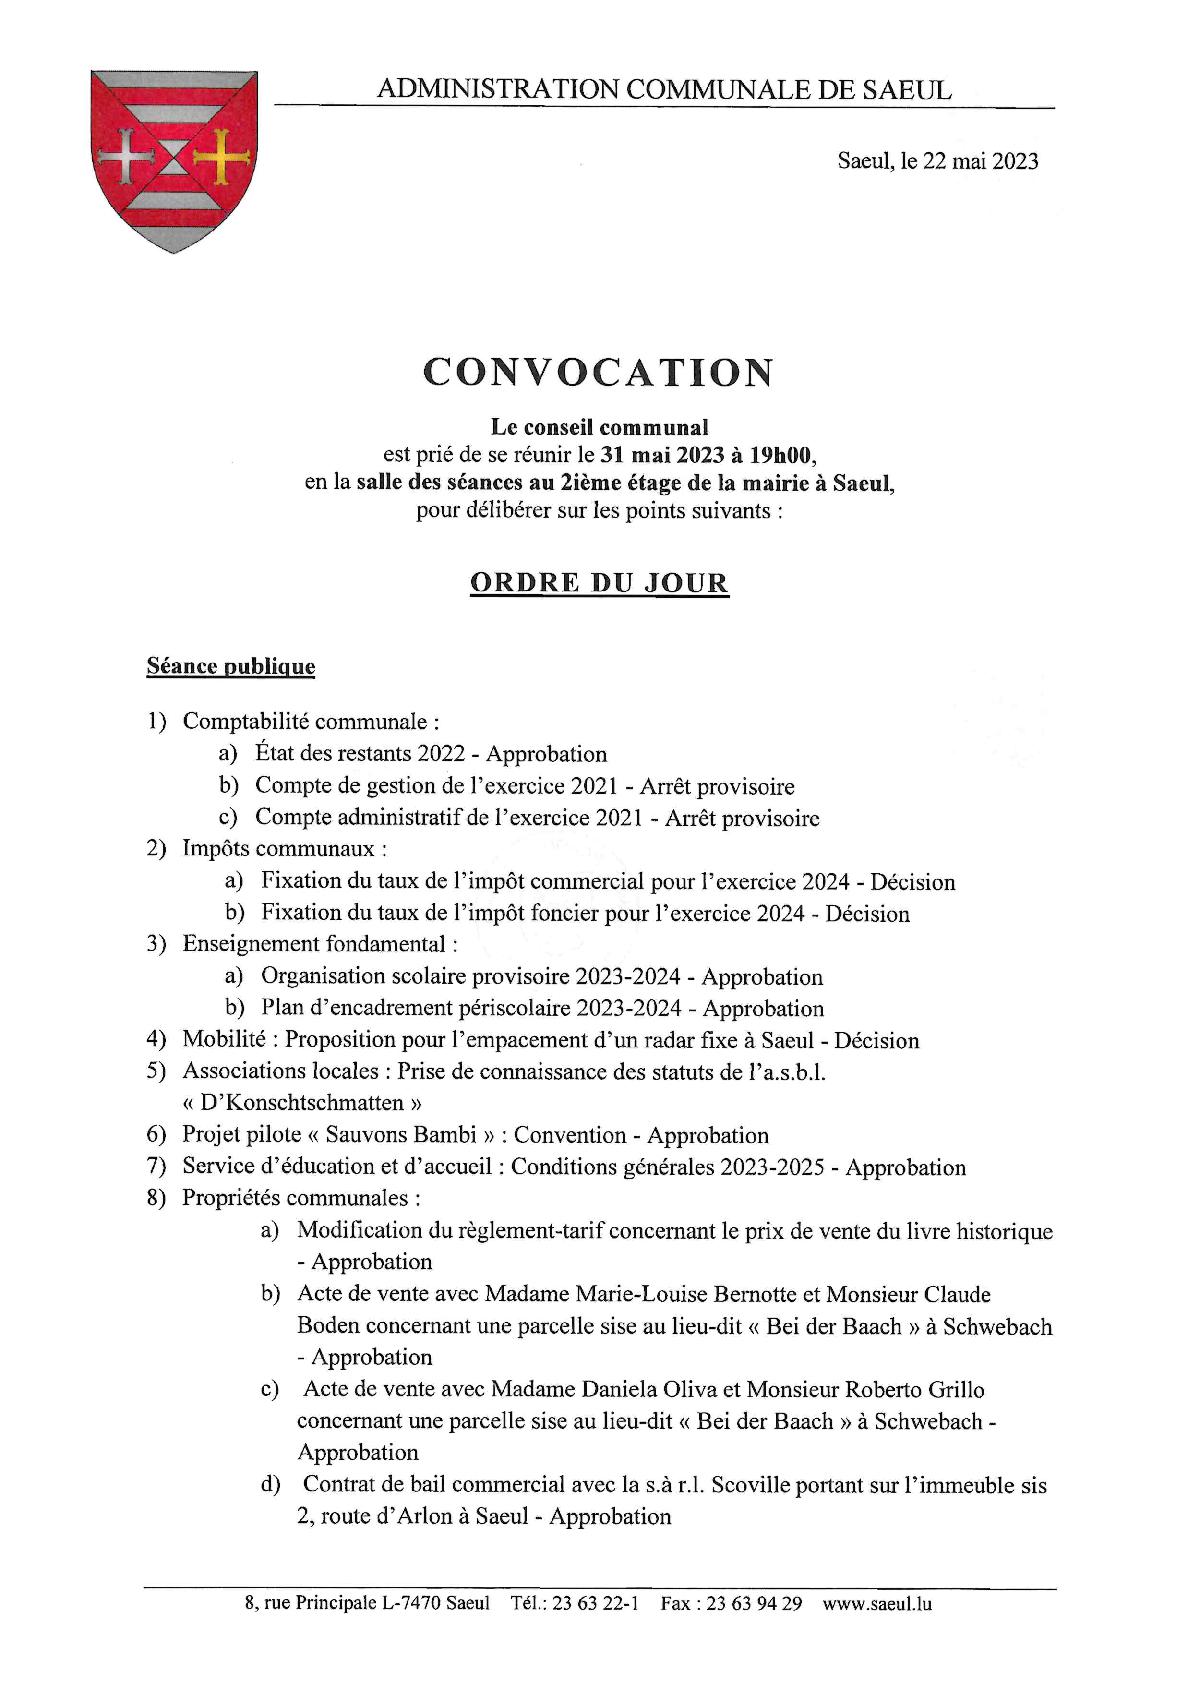 CONVOCATION | Ordre du jour pour la séance publique du conseil communal le 31 mai 2023 à 19h00